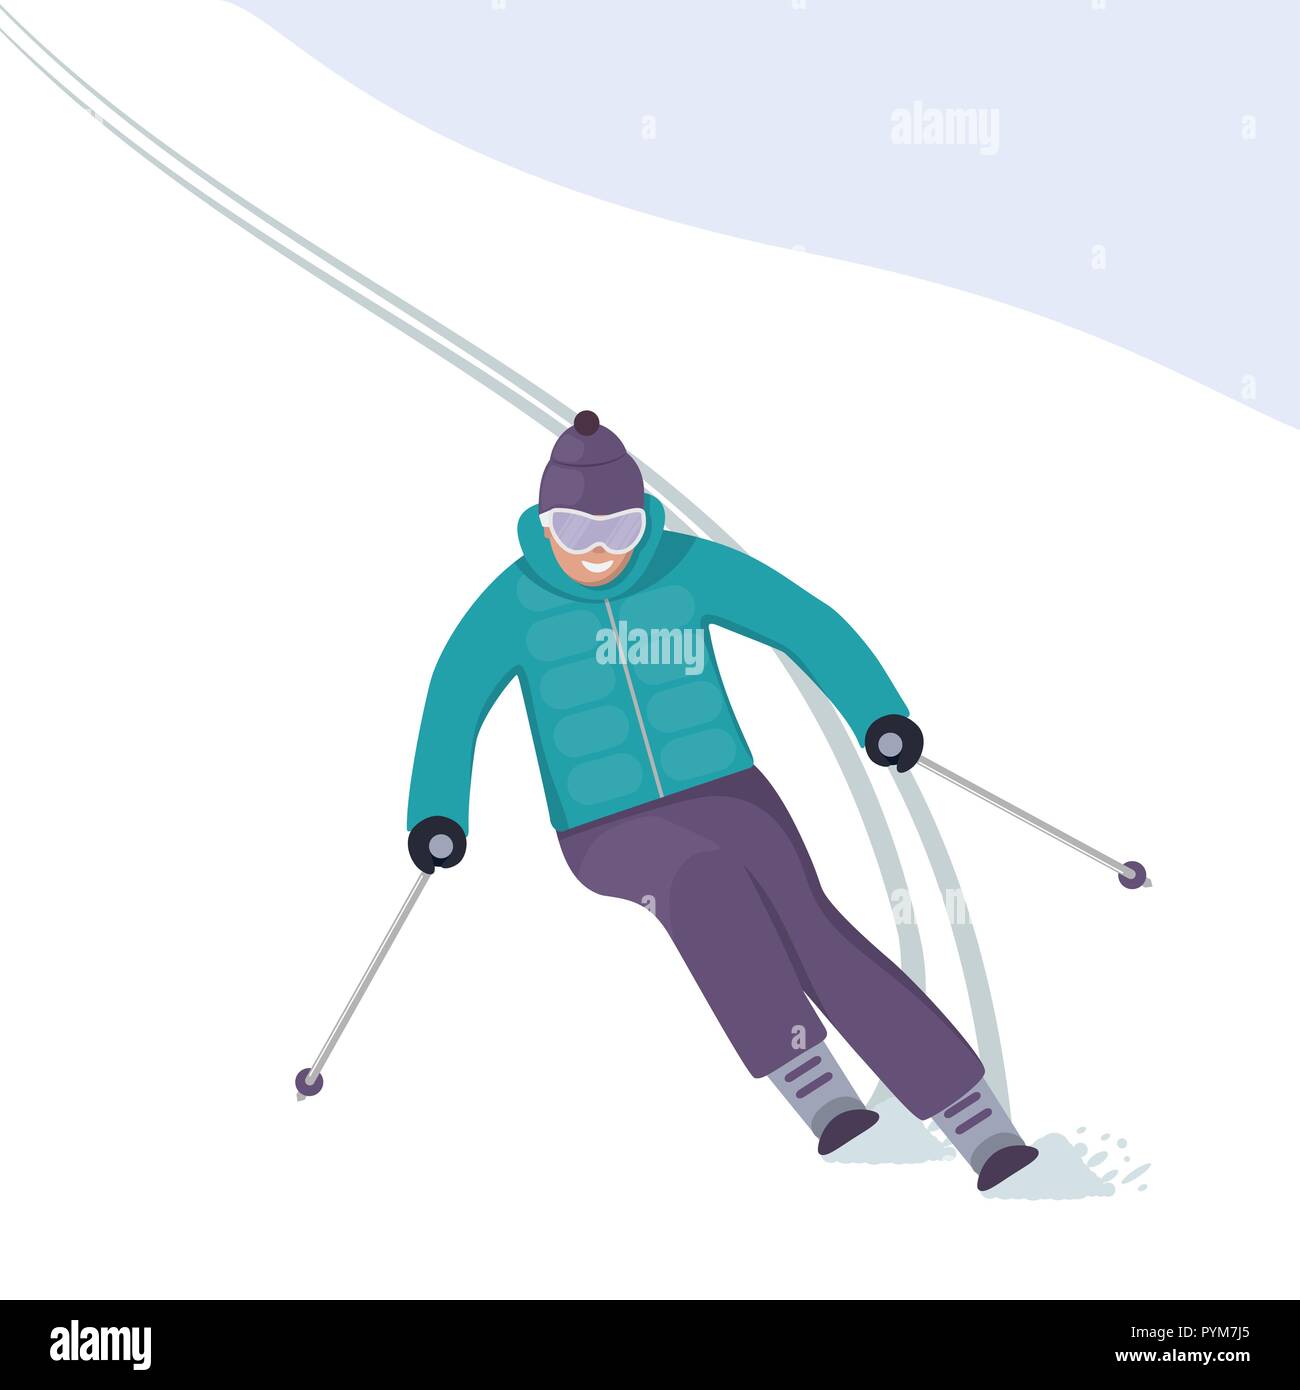 Le skieur s'engouffre dans la pente avec un sourire sur son visage. Vacances d'hiver dans les montagnes. Le ski alpin. Vector illustration style de télévision Illustration de Vecteur